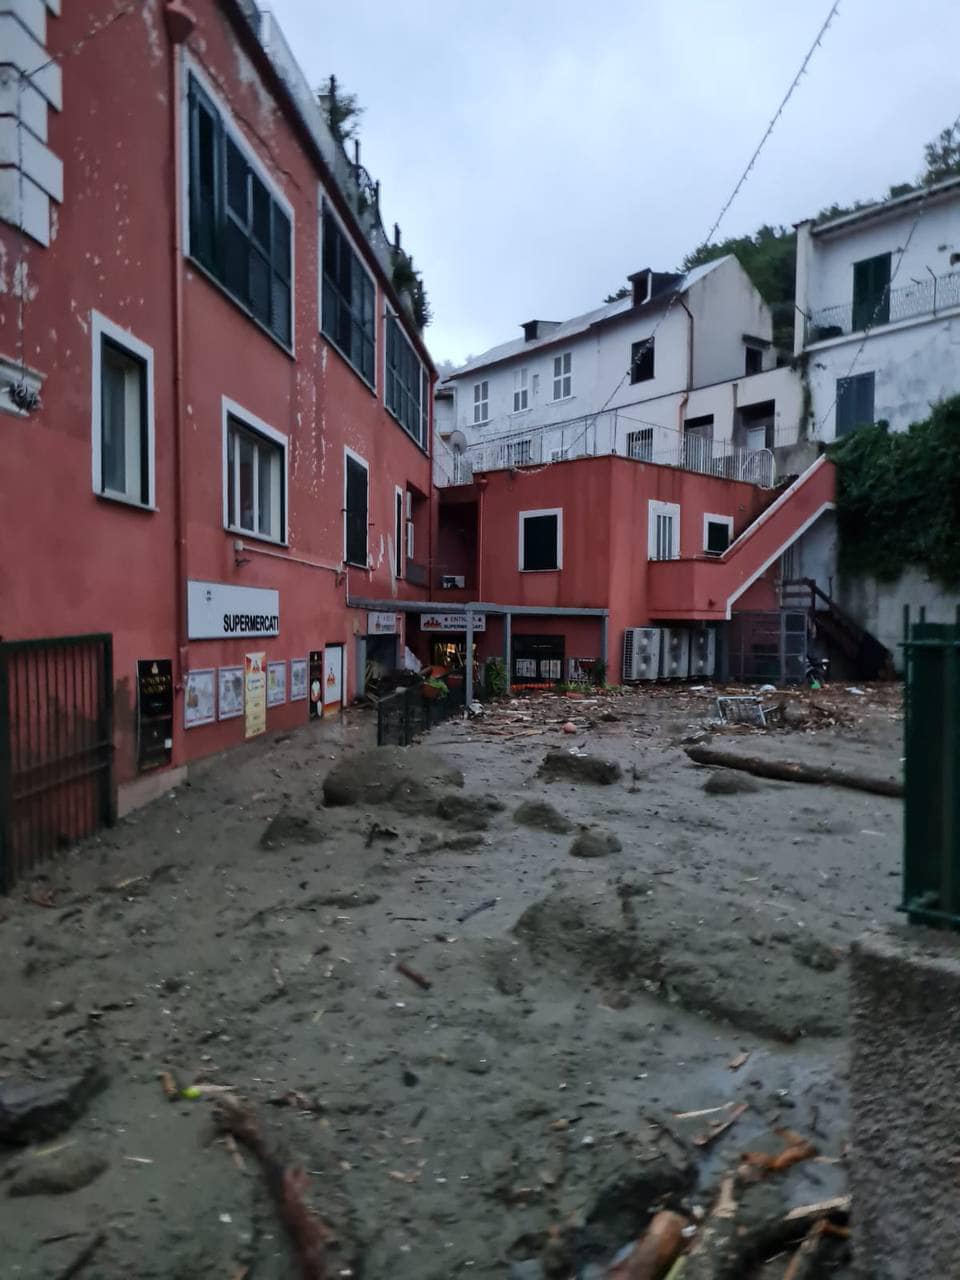 Frana Ischia, una vittima e 12 dispersi: si scava nel fango. Evacuate 200 persone